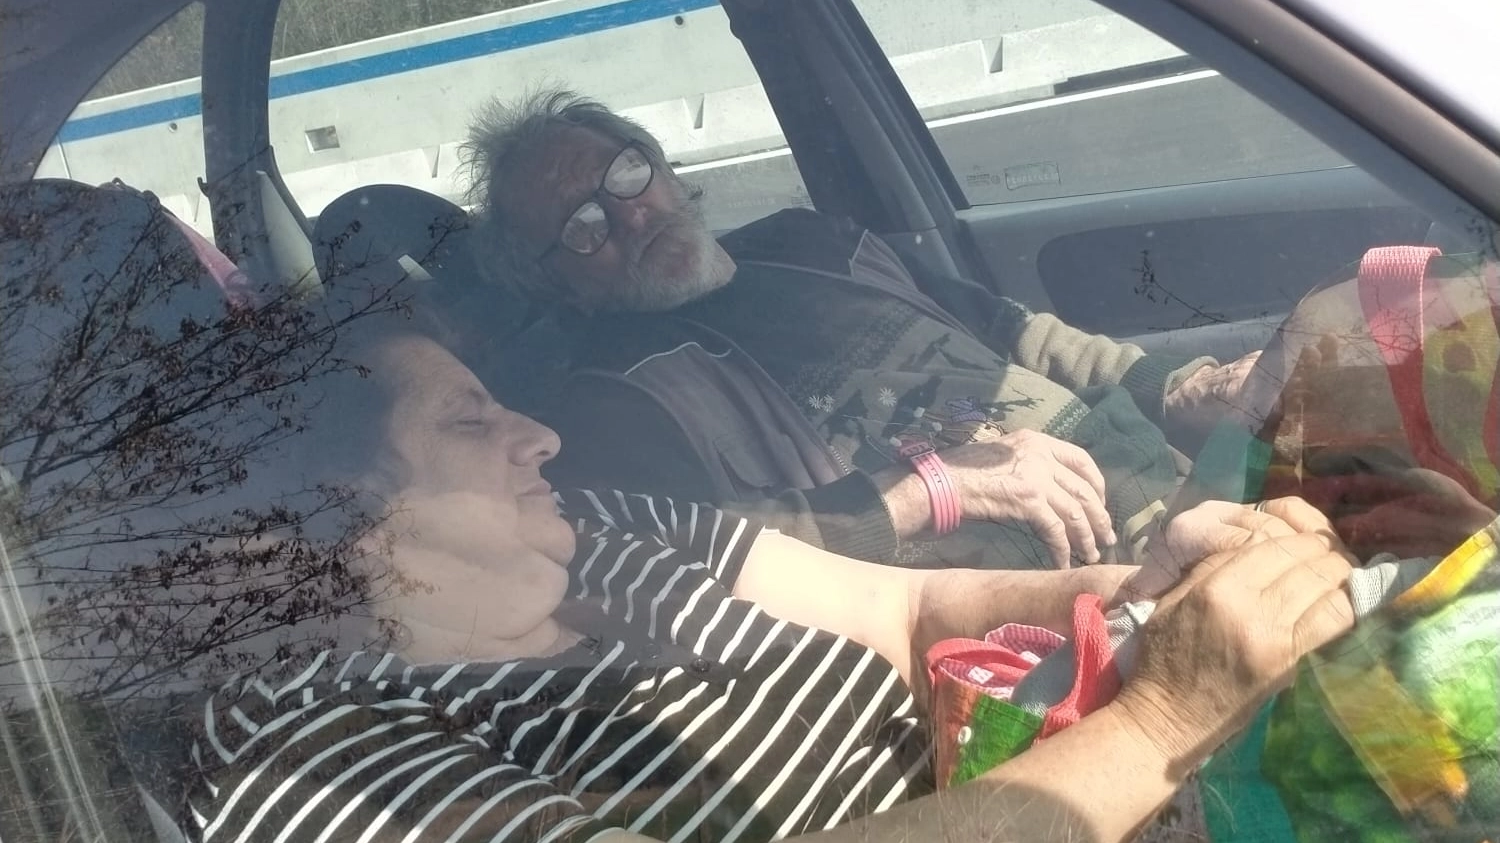 Marito e moglie sfrattati dormono in auto